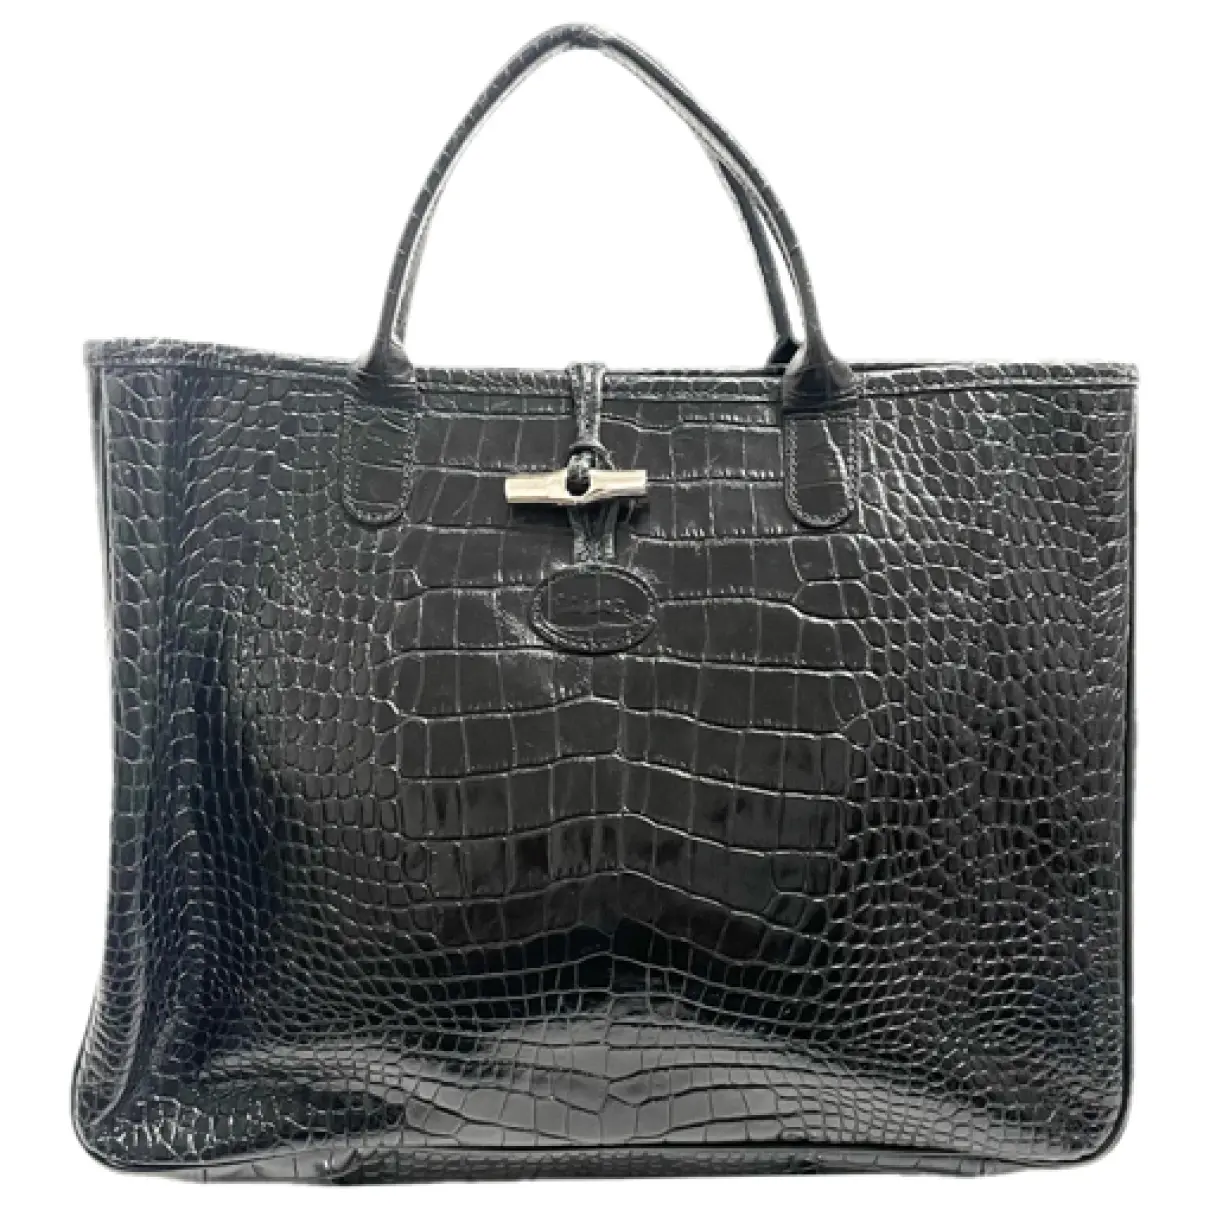 Roseau leather tote Longchamp